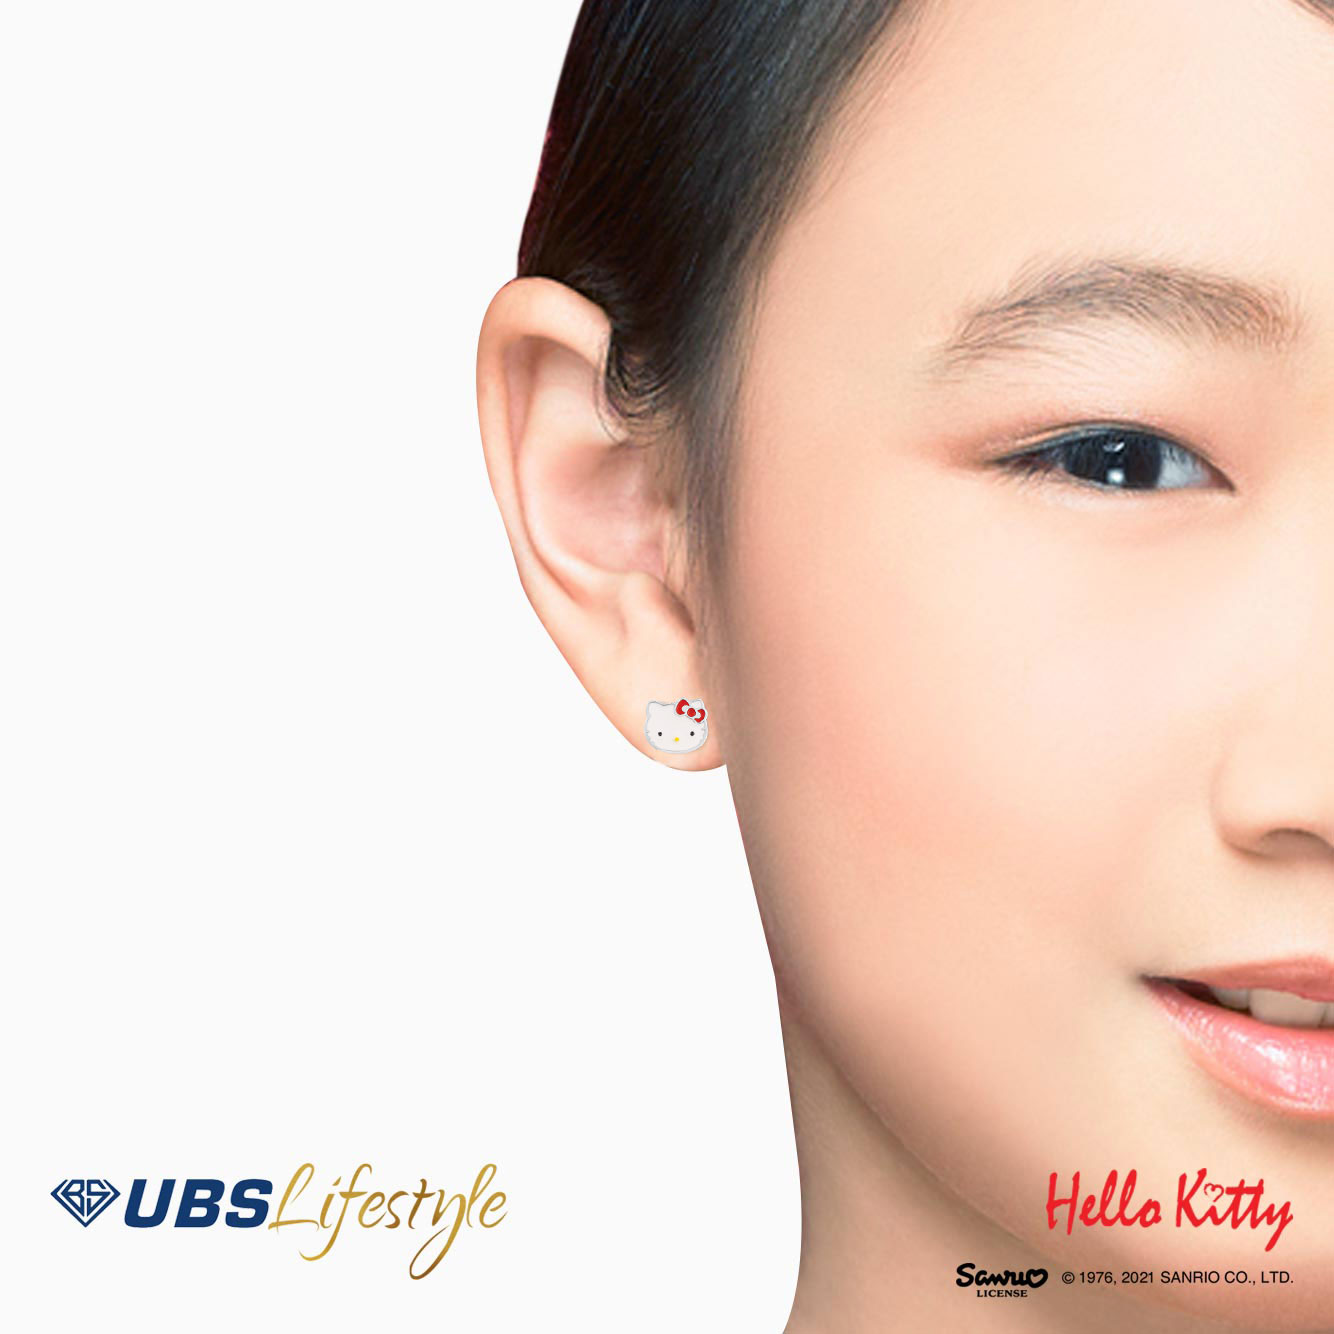 UBS Anting Emas Anak Sanrio Hello Kitty - Awz0001T - 17K